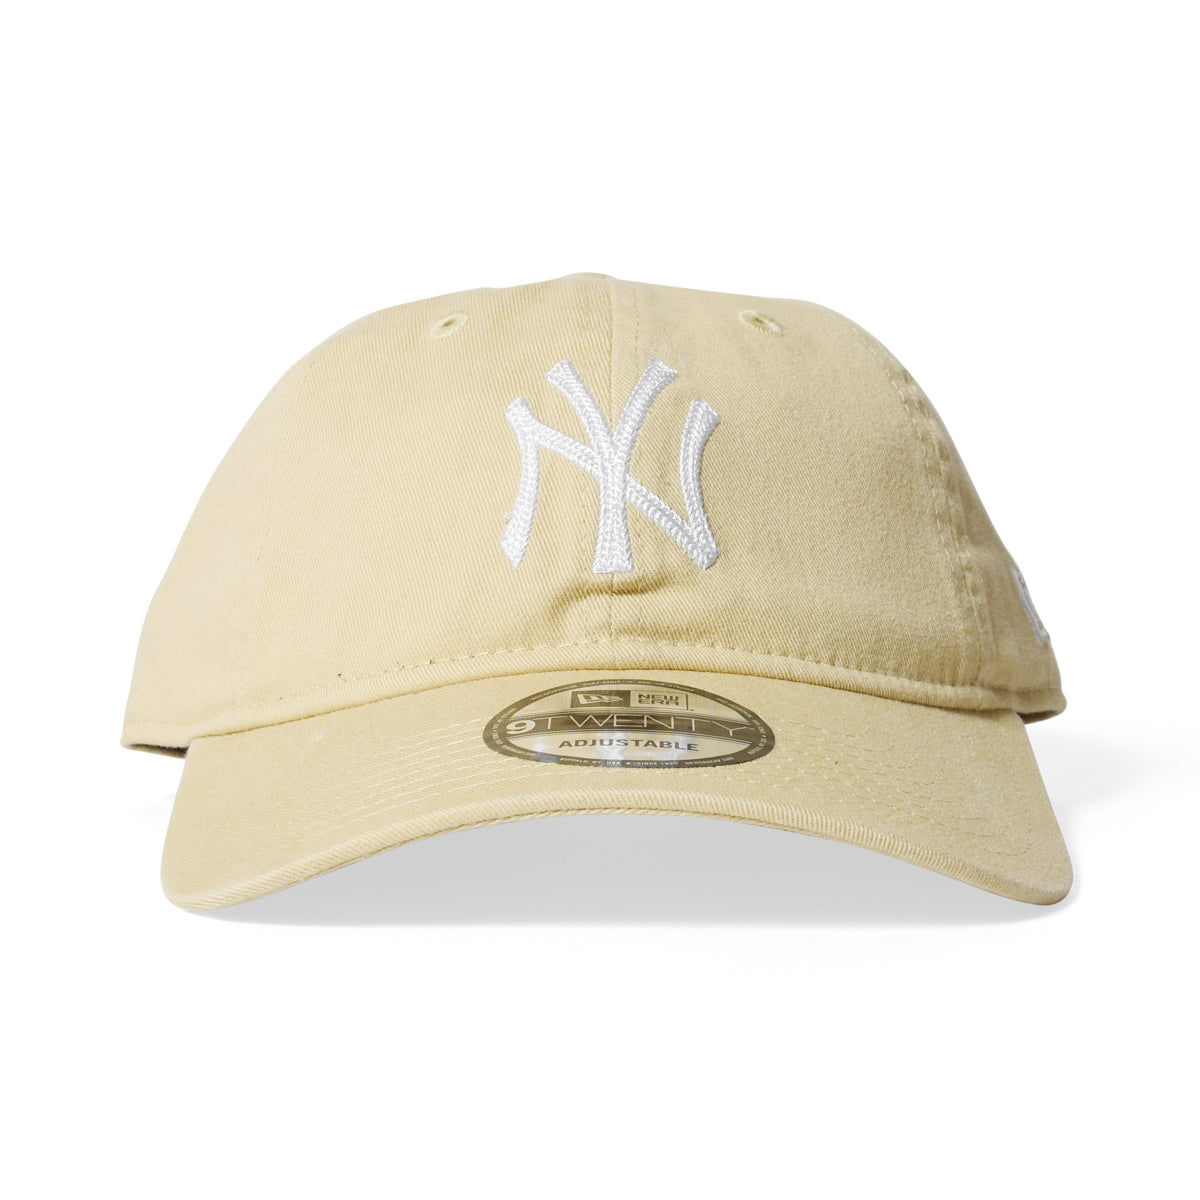 ニューエラ キャップ 帽子 NEWERA 9TWENTY 無地 NY LA メンズ レディース サイズ調節可能 フリーサイズ MLB ブラック ネイビー ホワイト カーキ ダークグリーン